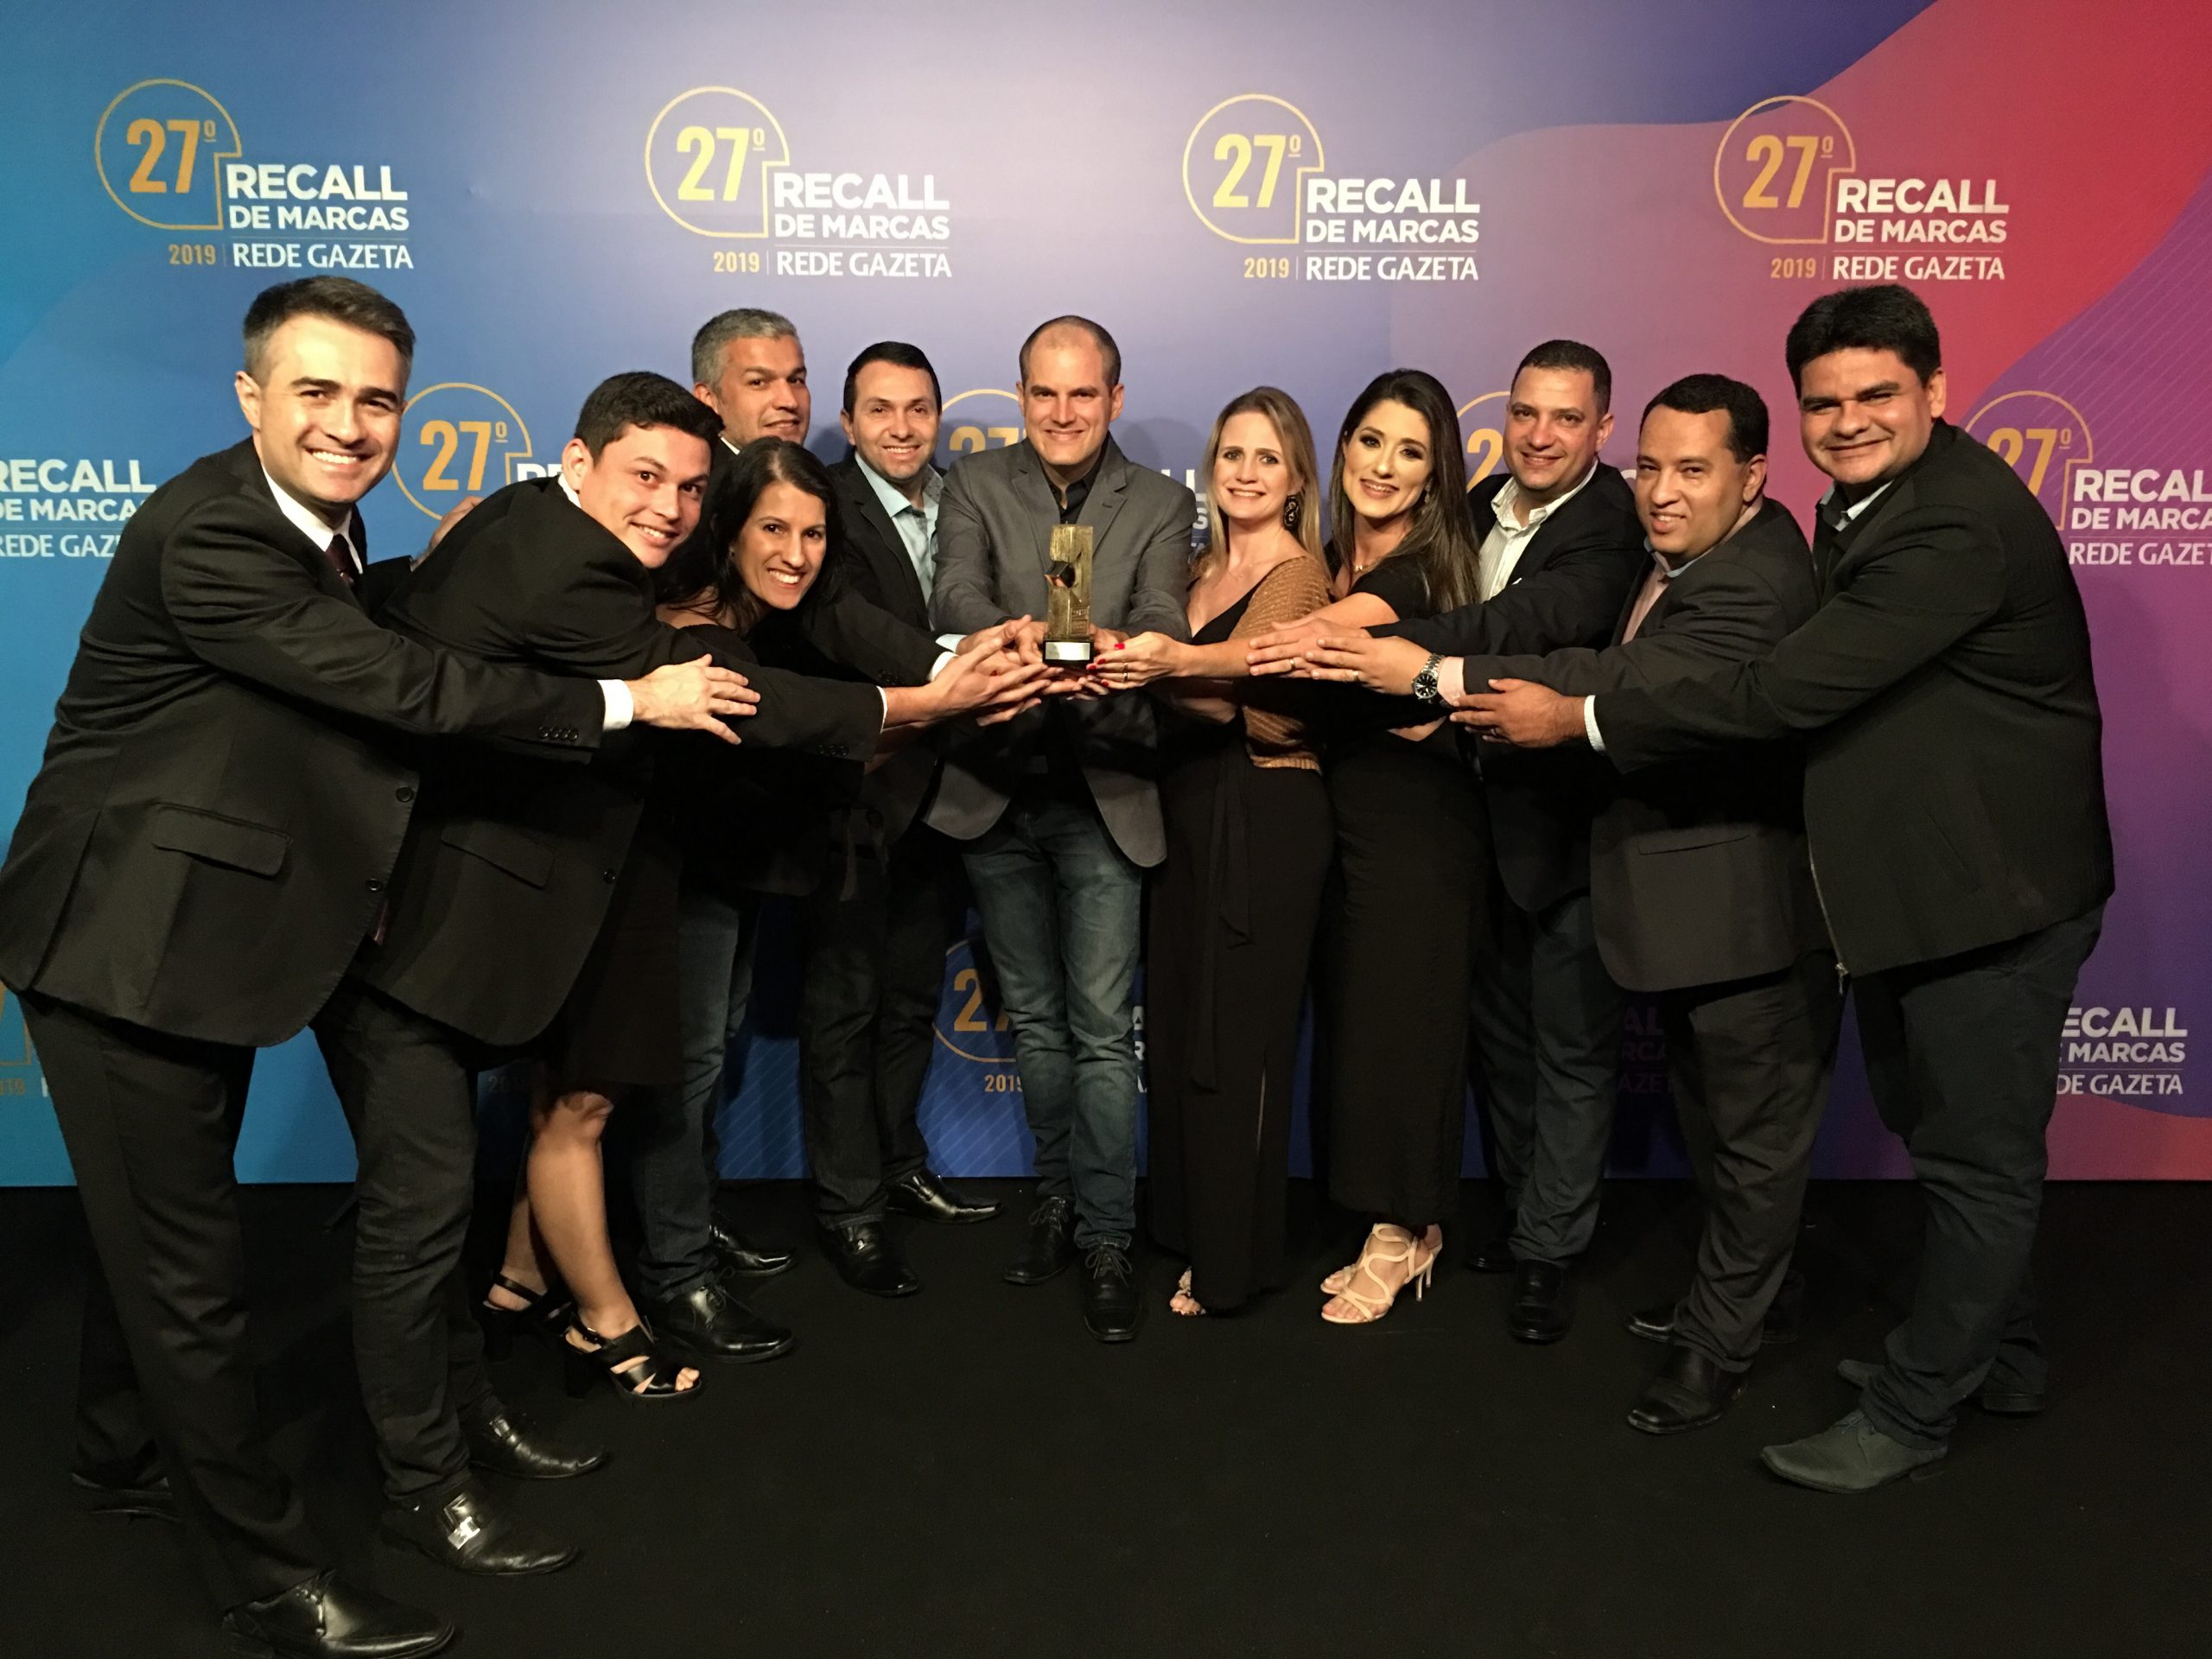 A equipe da Politintas recebeu o troféu Recall de Marcas Rede Gazeta 2019